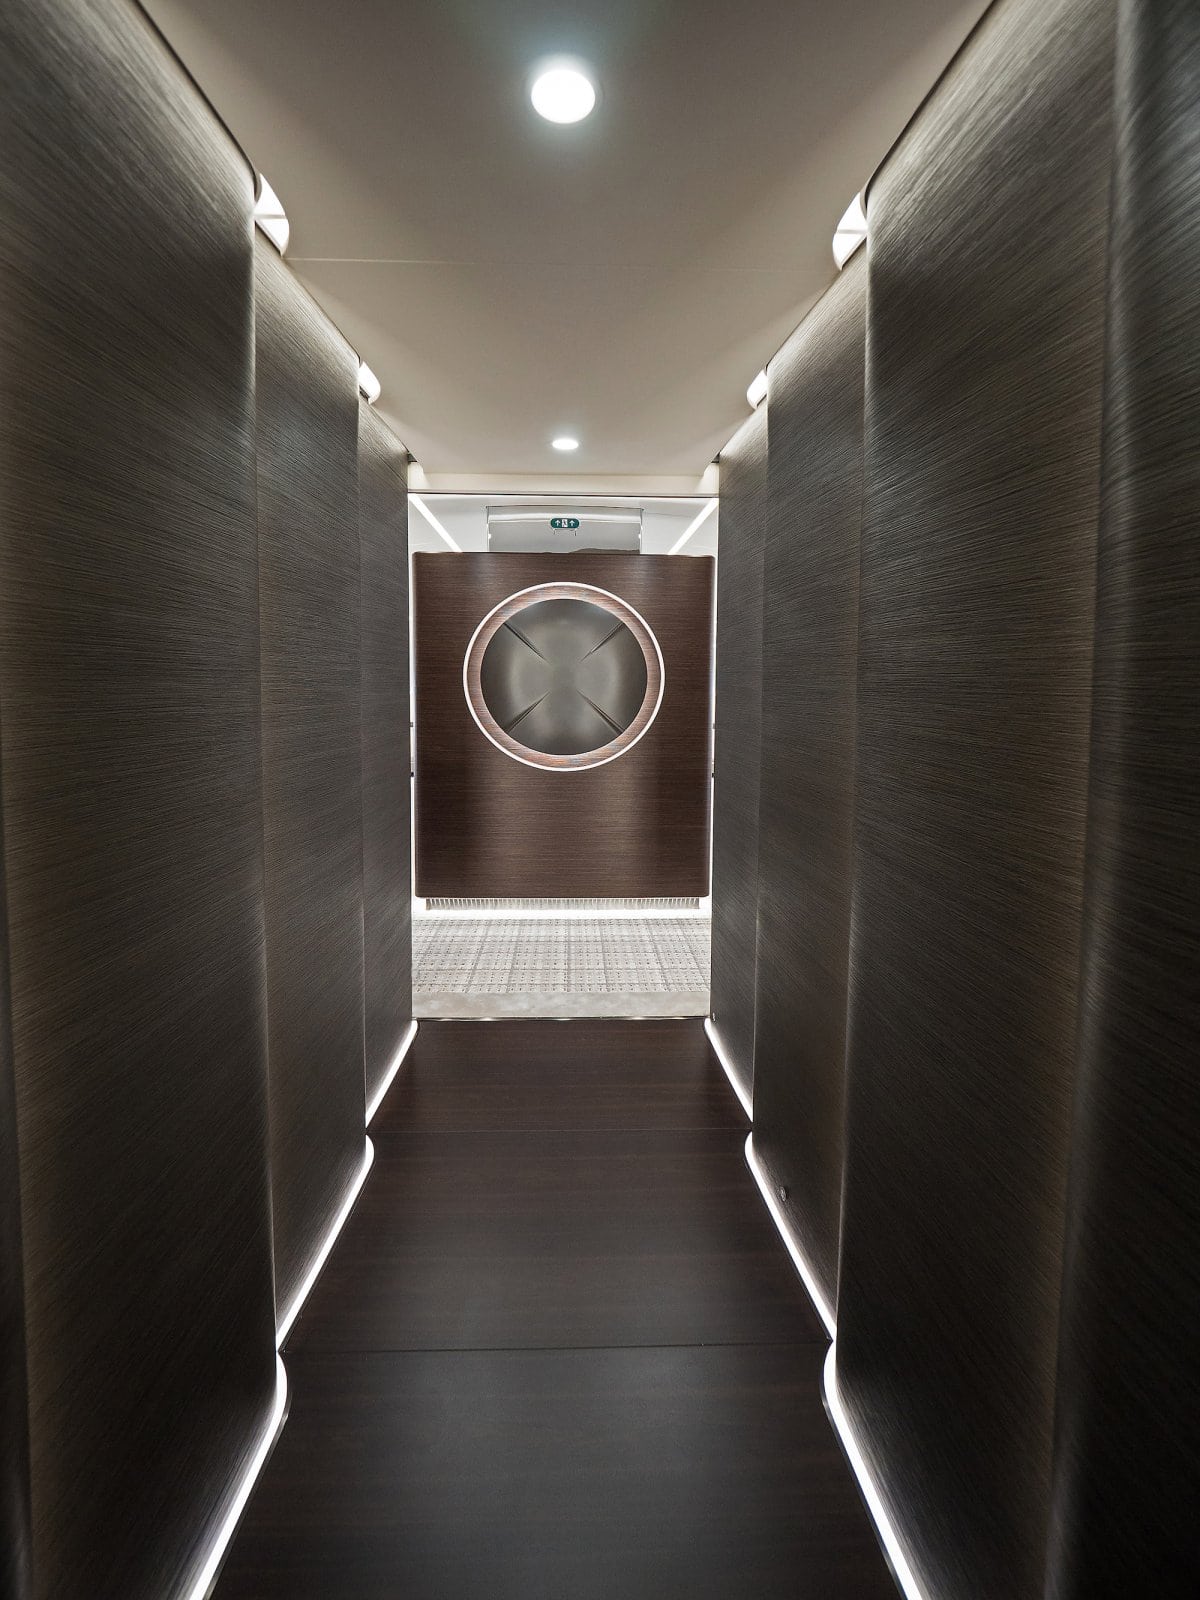 Opulentos comedores, cocinas y salas: Echa un vistazo al lujoso interior de uno de los JUMBO privados más personalizados del mundo